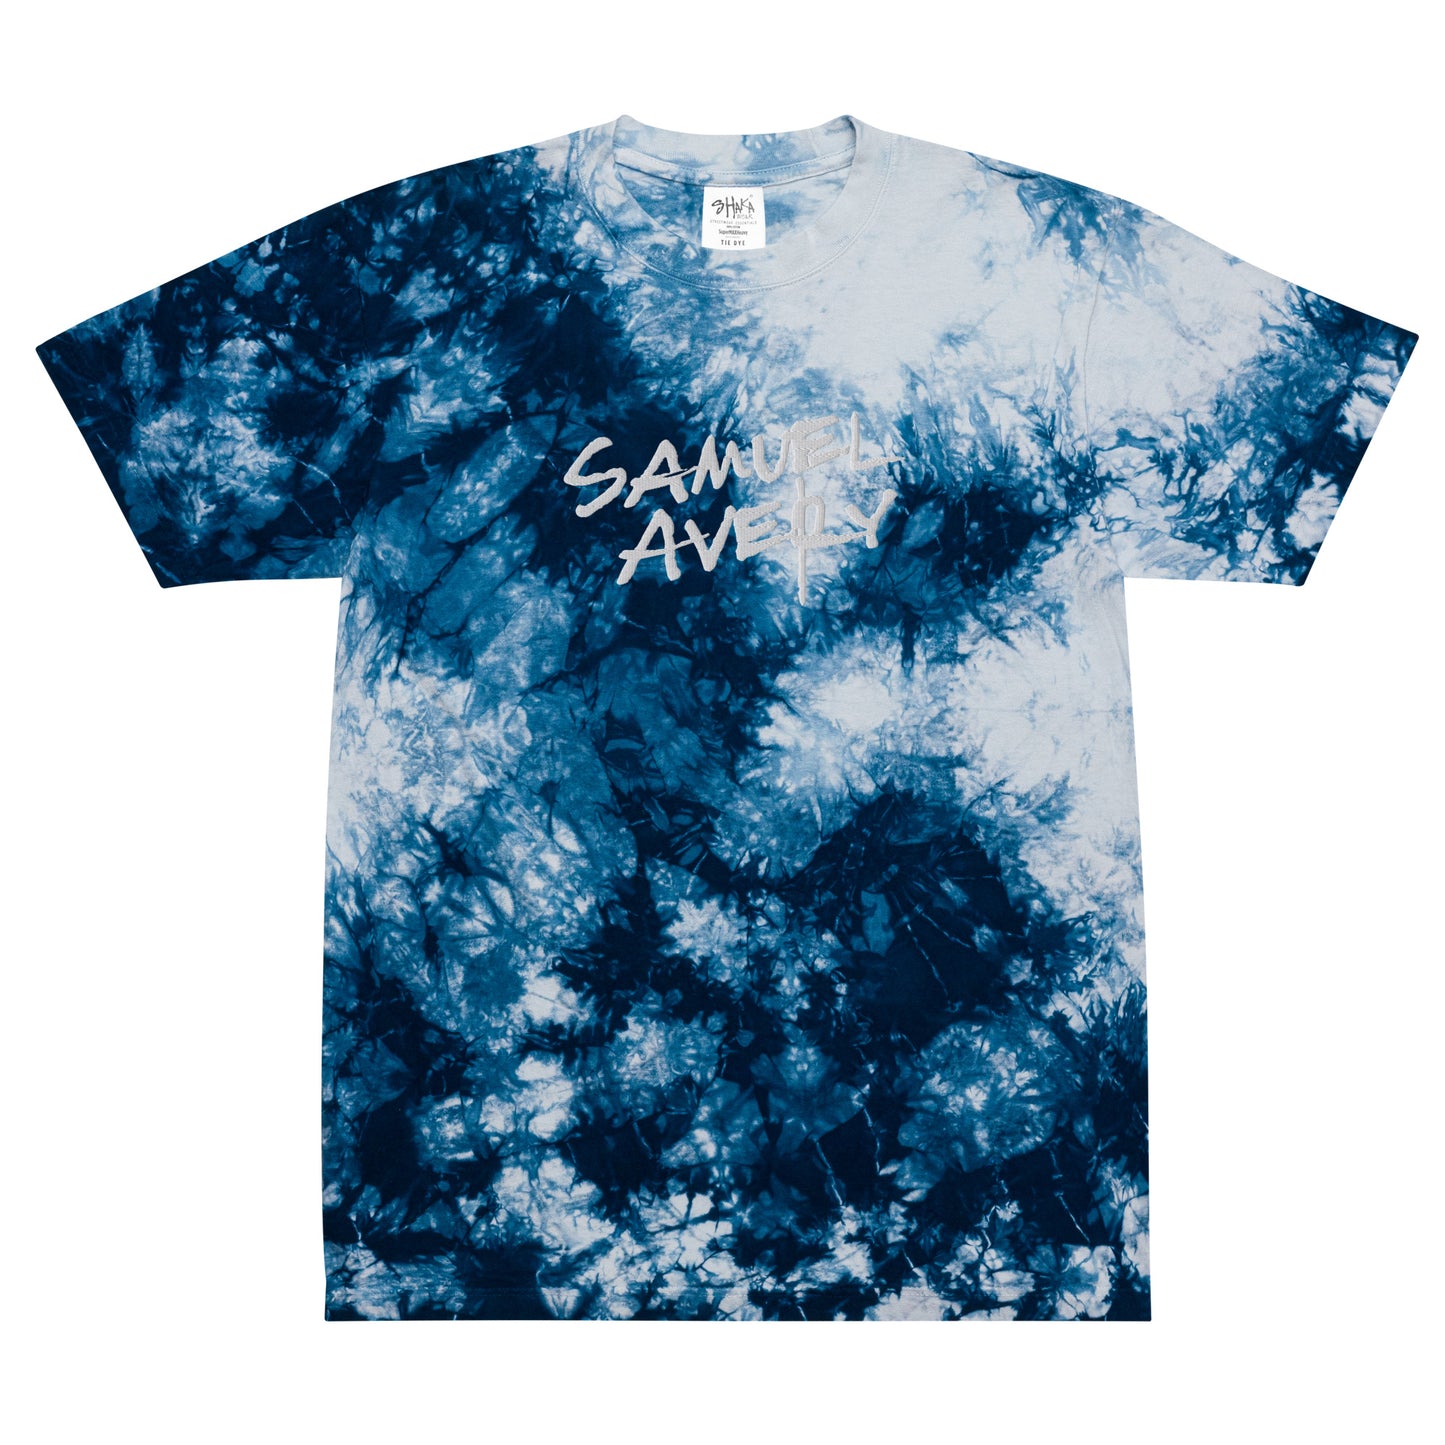 Samuel Avery - Weird Embroidered Tie Dye Shirt